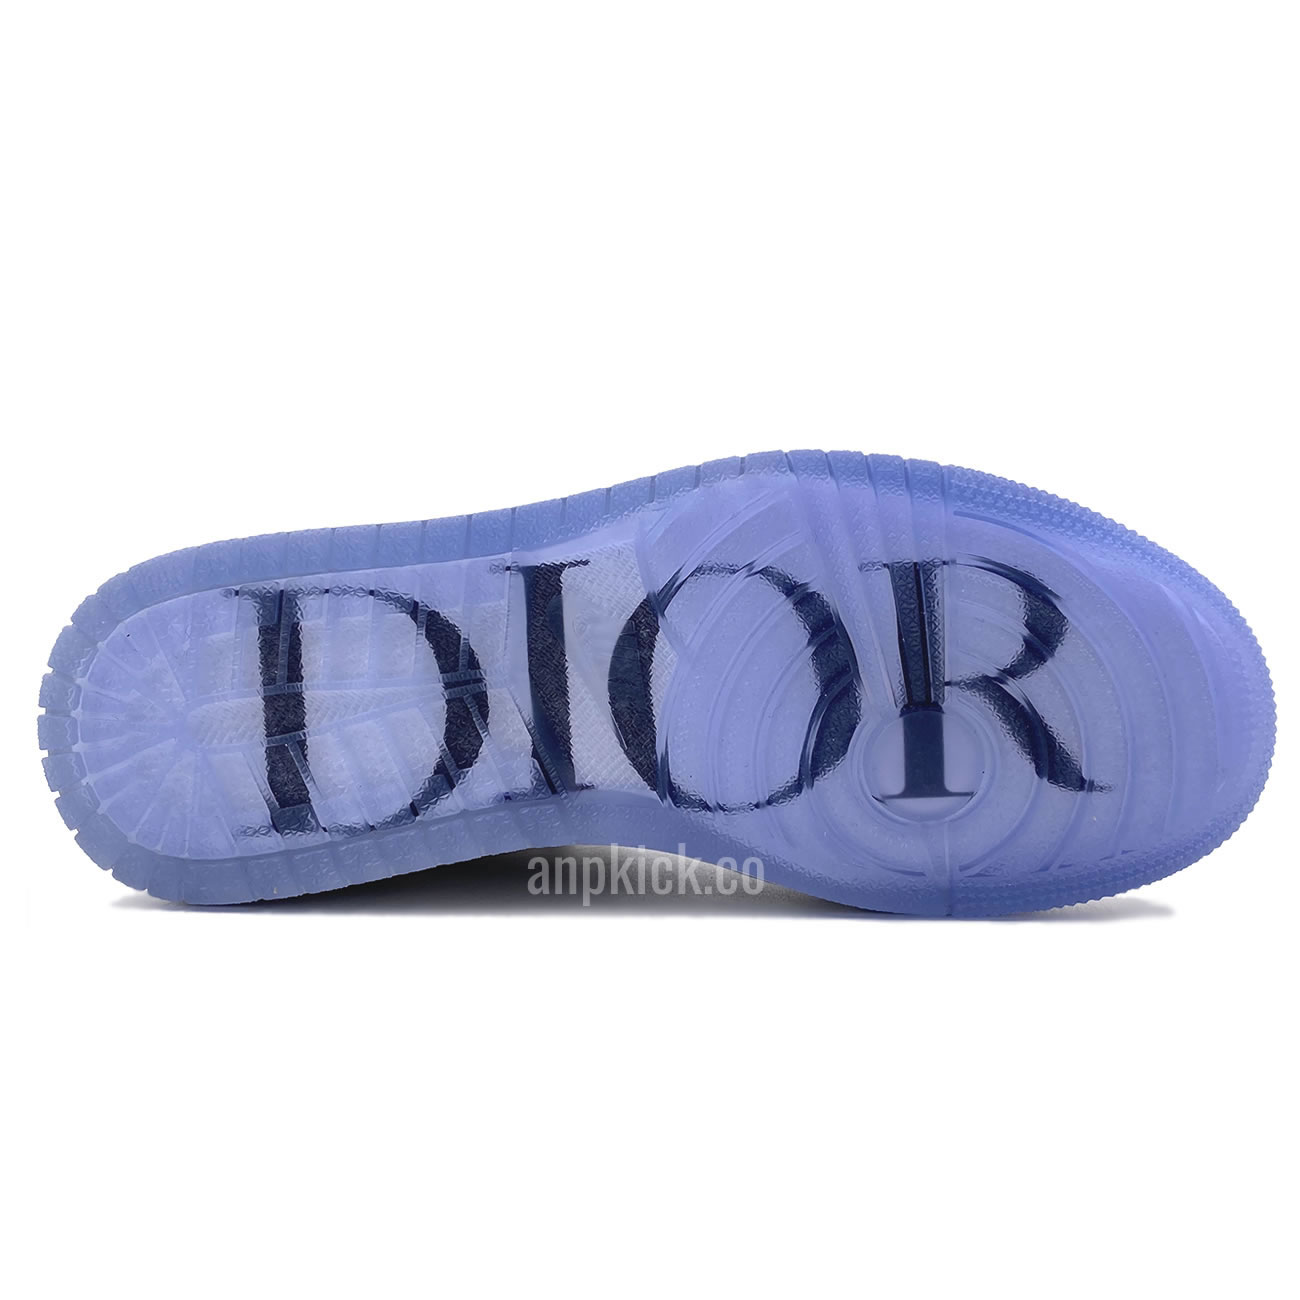 Dior Air Jordan 1 Cn8607 002 Details Anpkickz New High Best Batch (9) - newkick.org